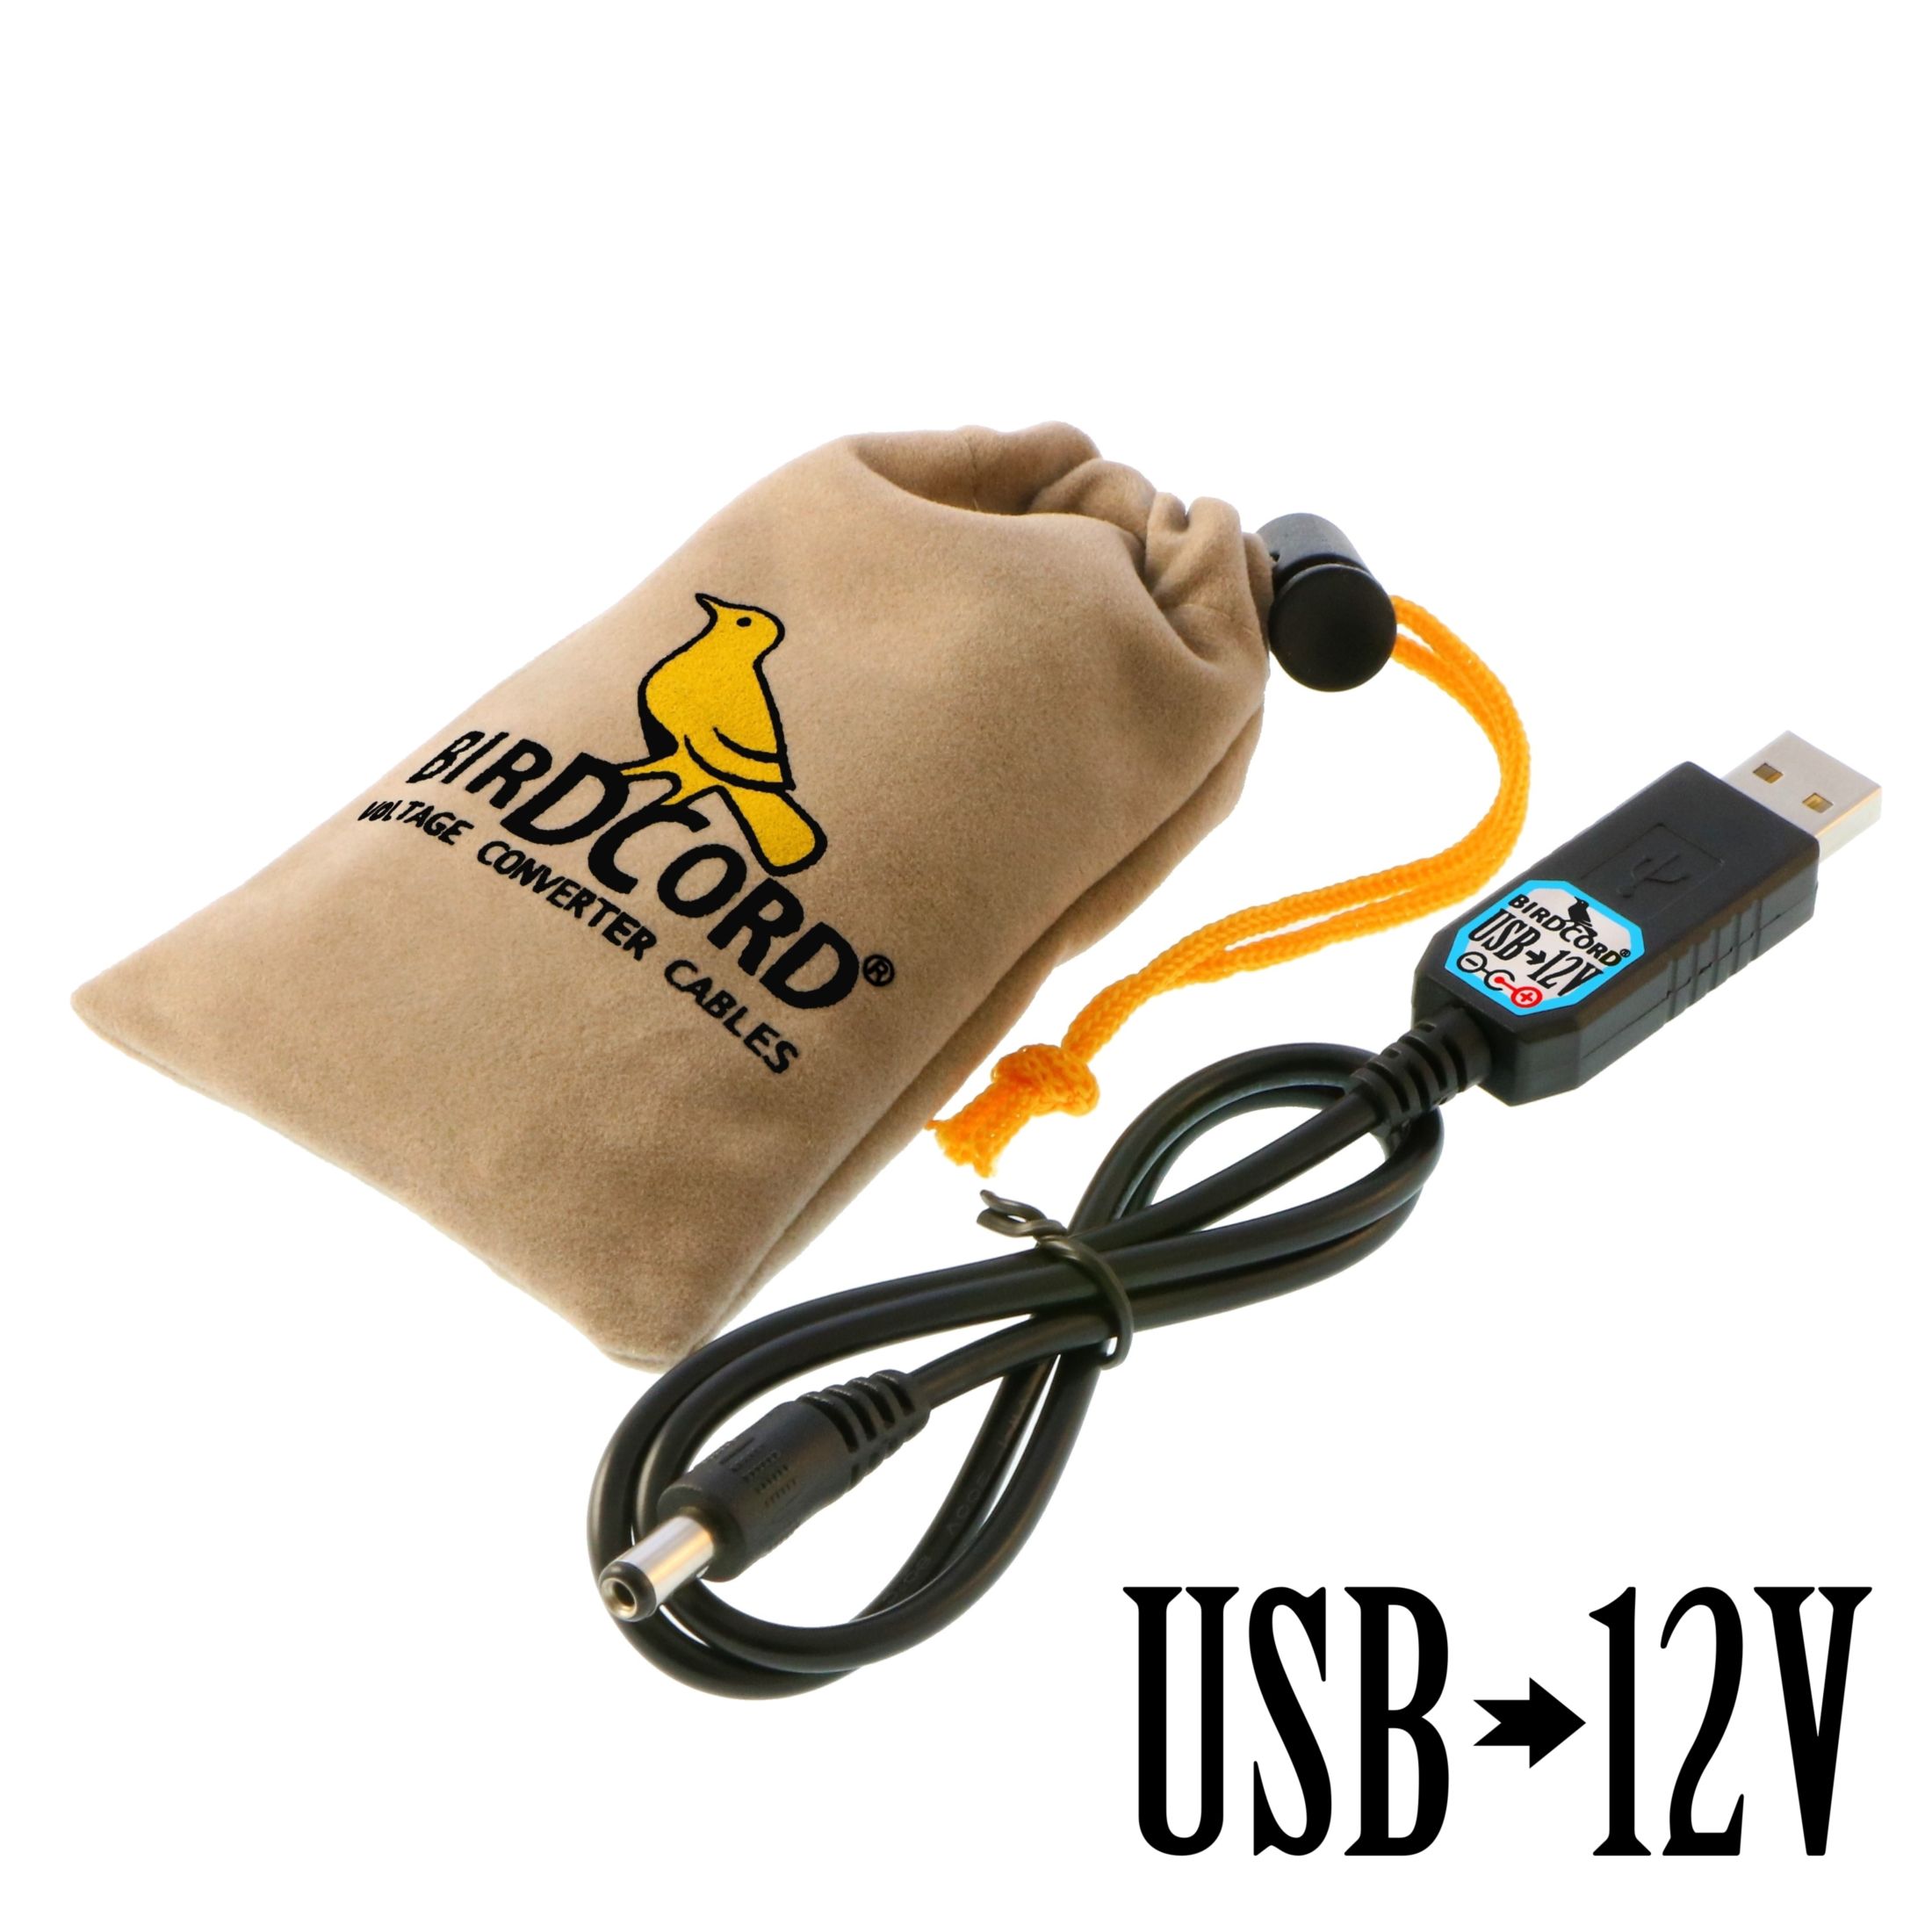 USB 5V to 12V 5.5mm x 2.5mm DC Barrel Connector Step-up Power